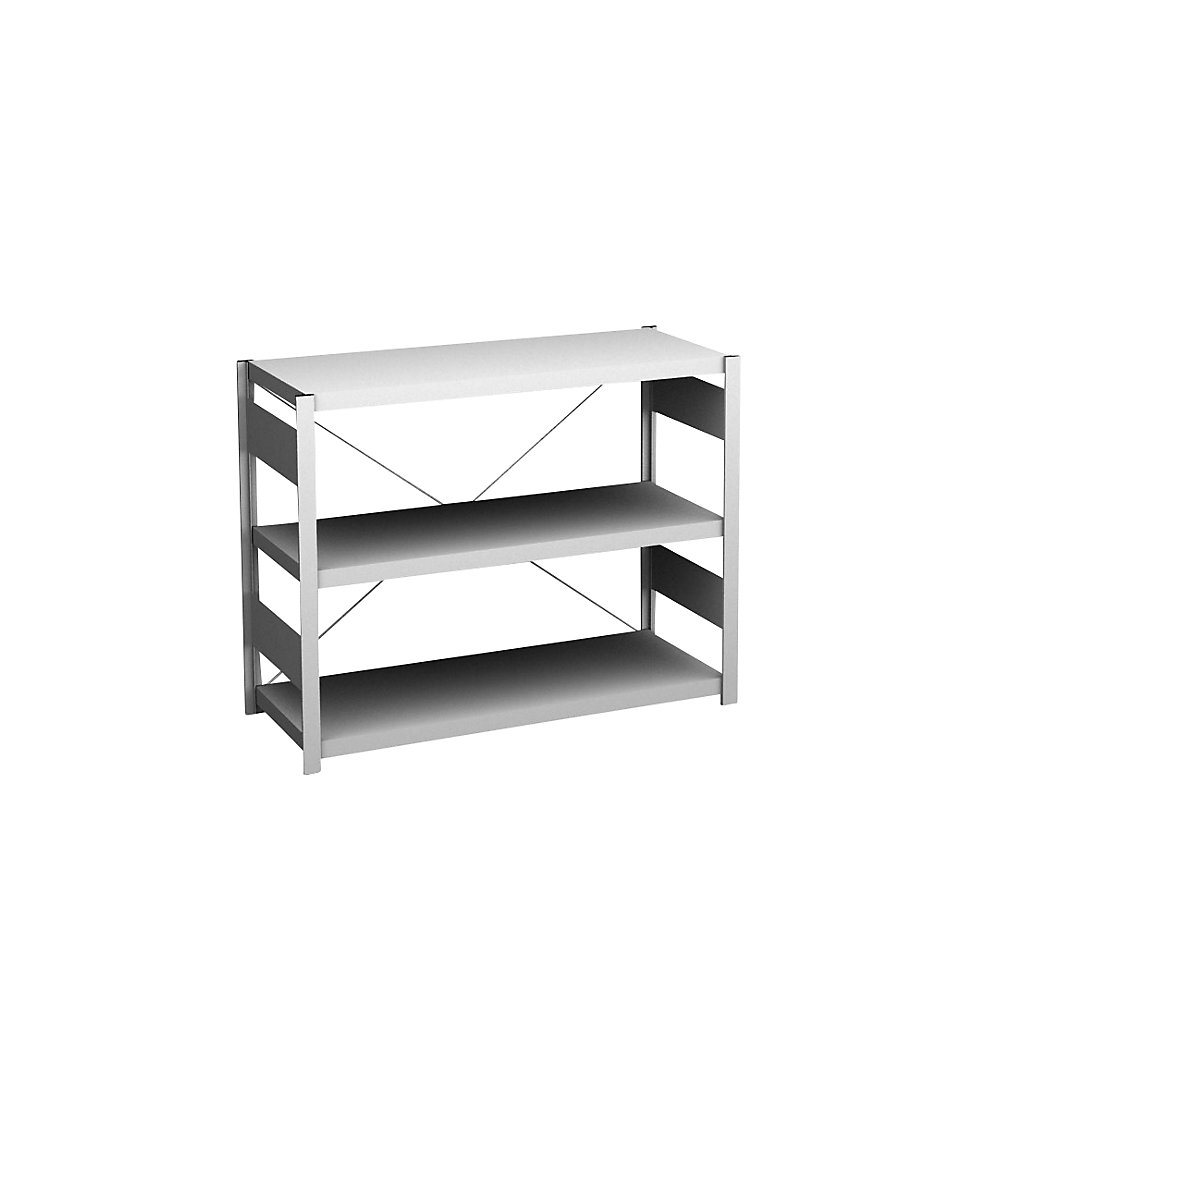 Sideboard shelving unit, light grey – hofe, height 825 mm, 3 shelves, standard shelf unit, shelf depth 400 mm, max. shelf load 145 kg-1